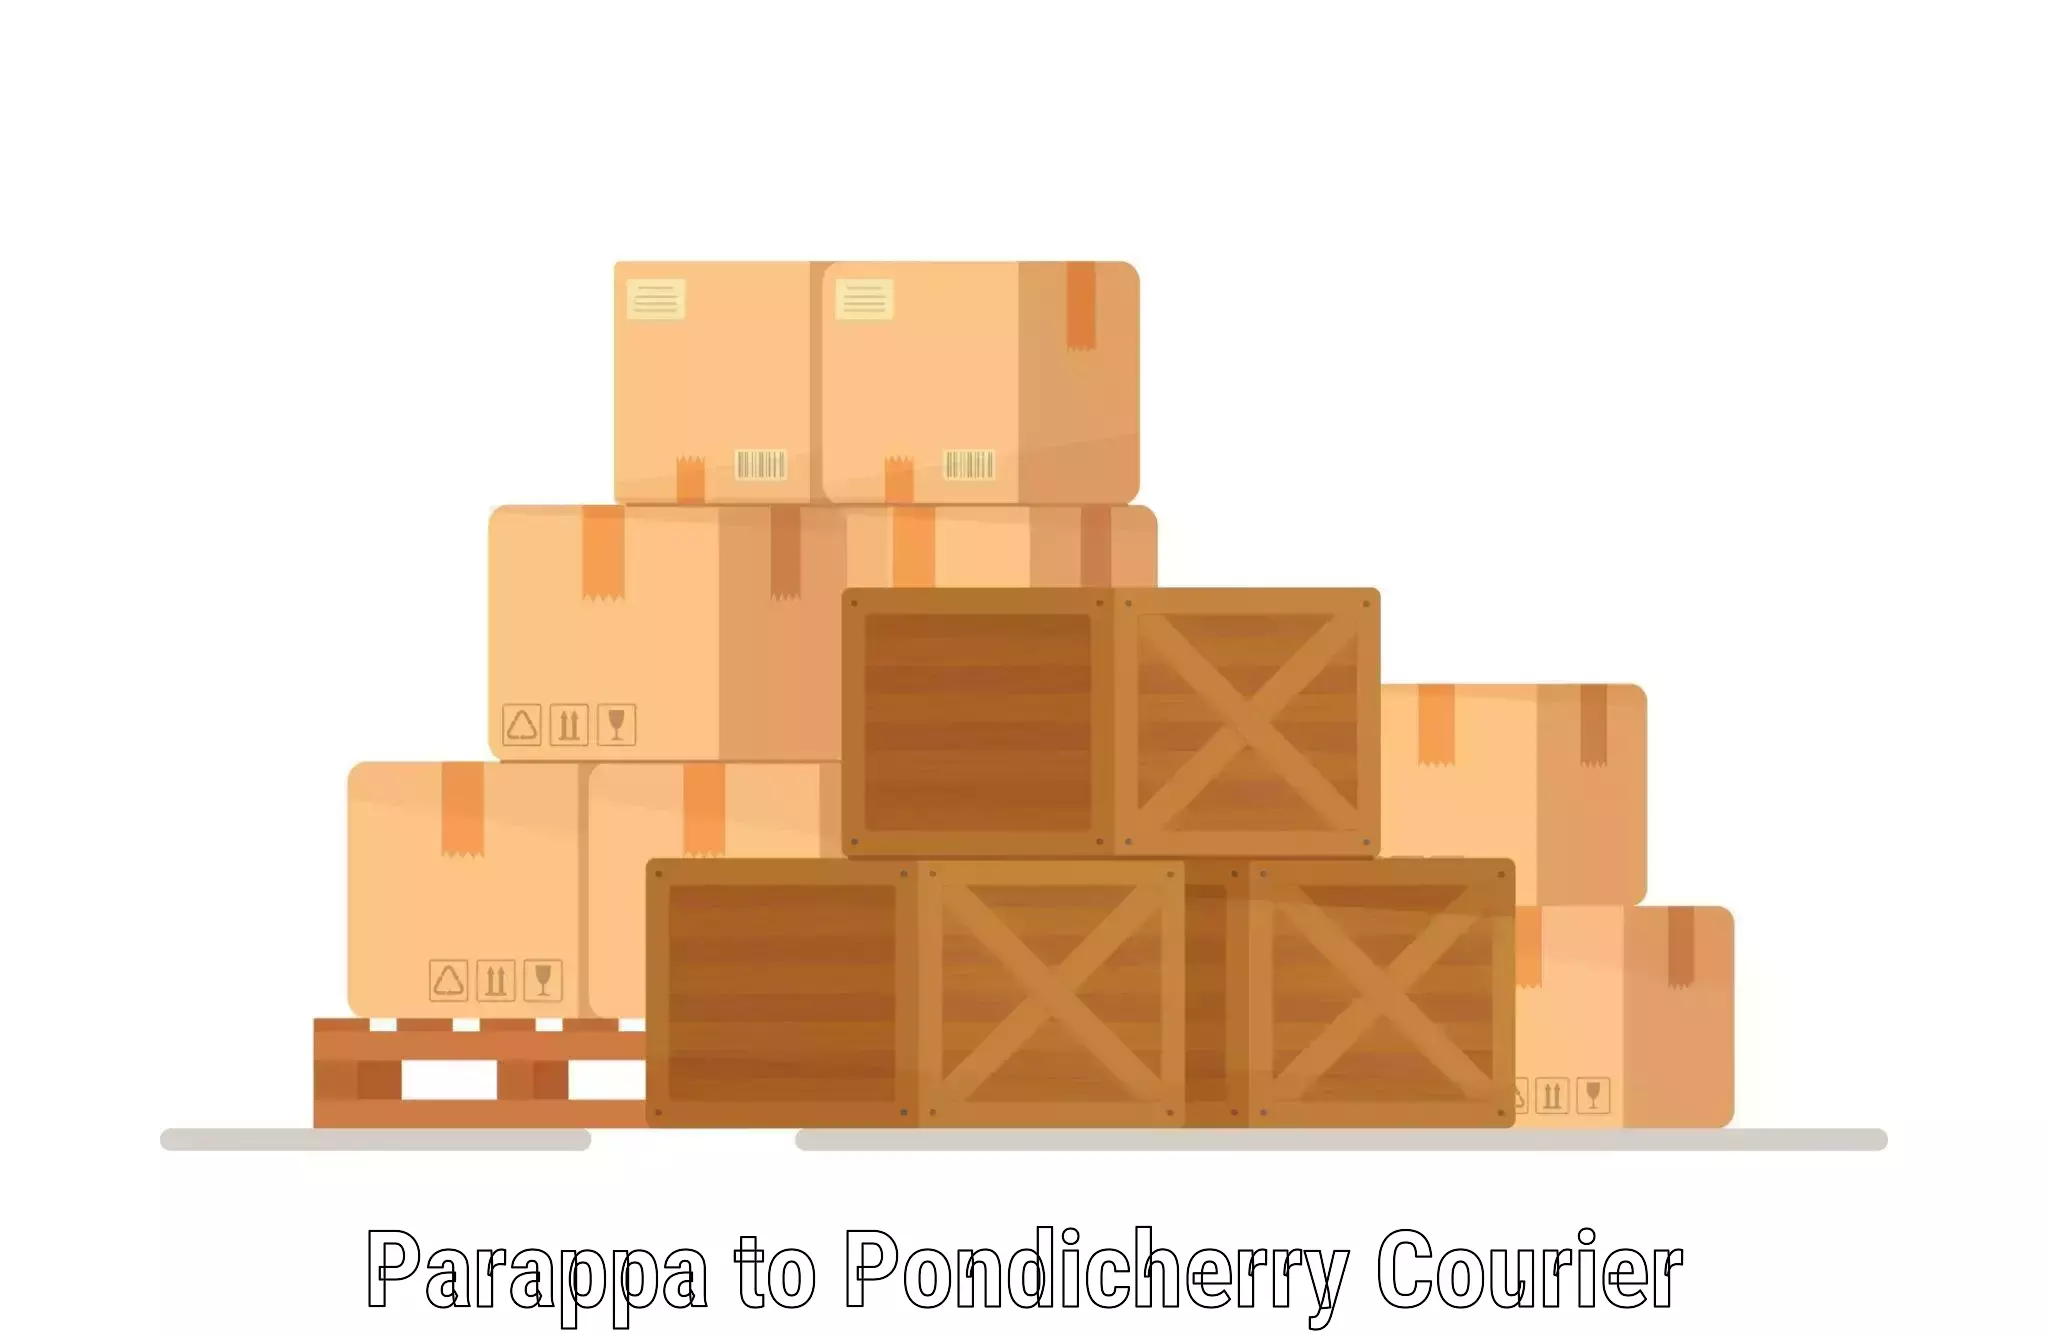 Urban courier service Parappa to Pondicherry